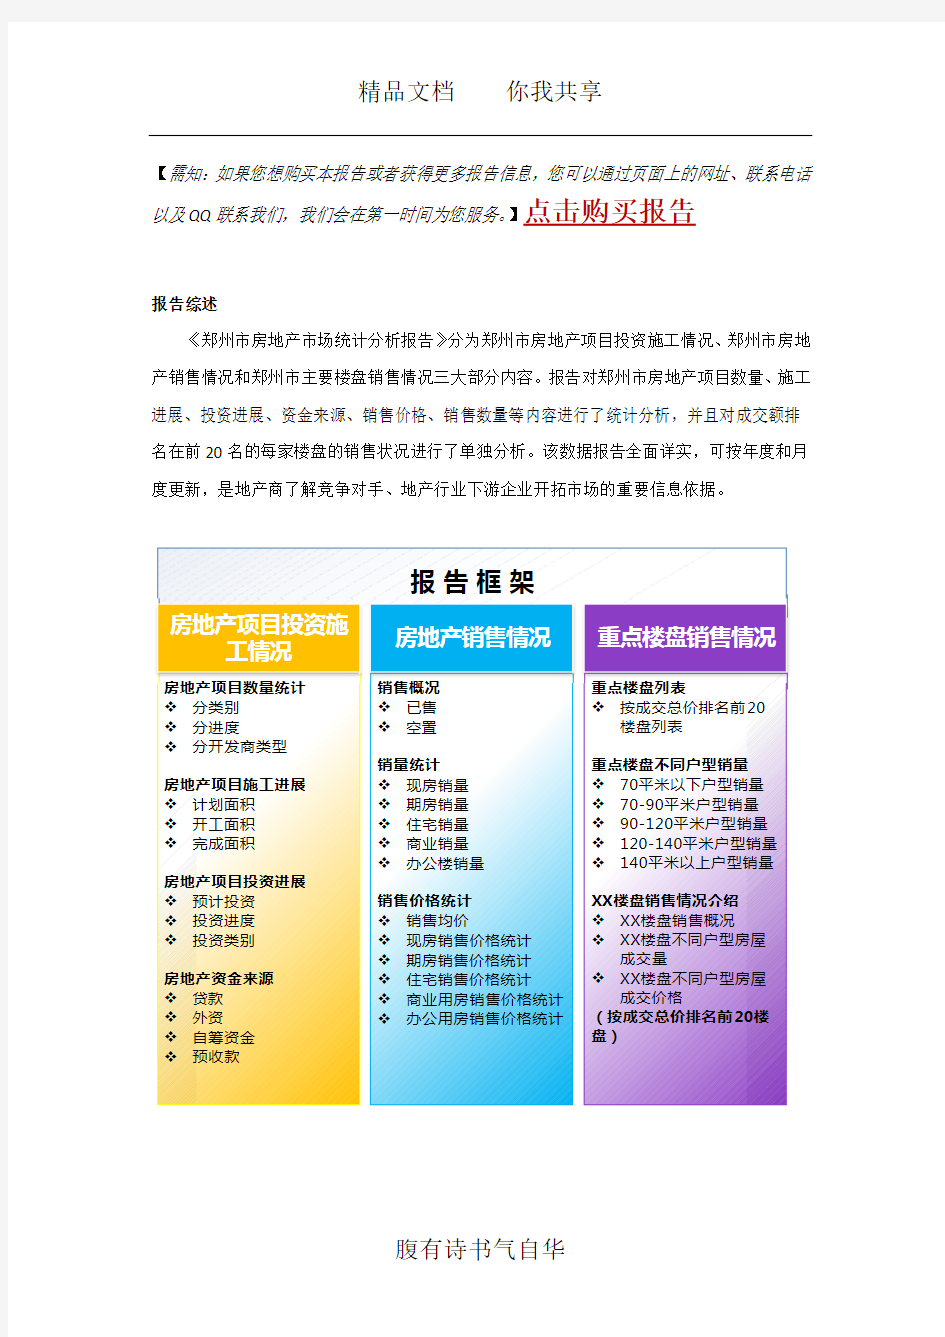 郑州市房地产市场统计分析报告